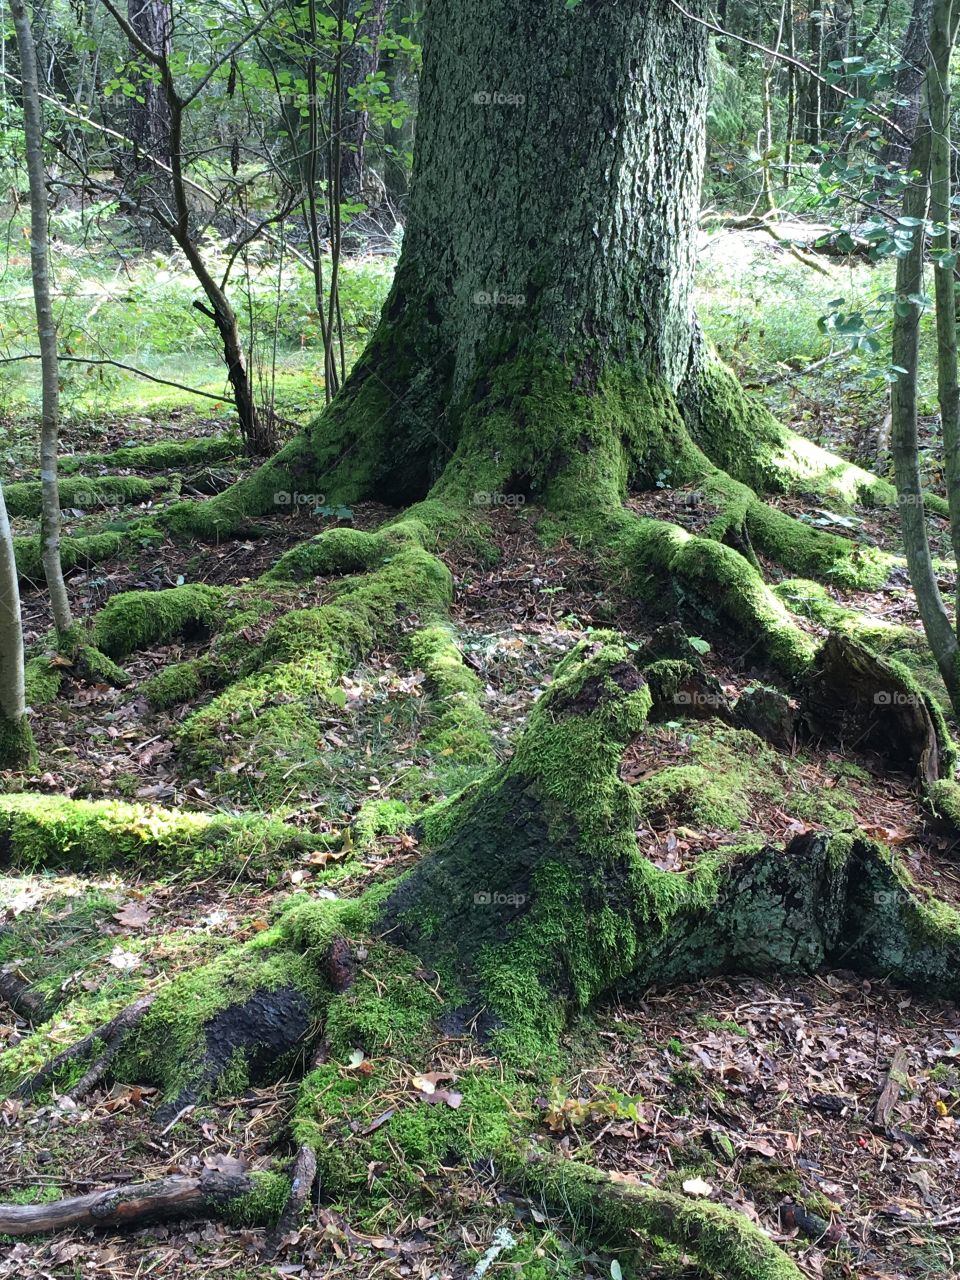 Moss on tree root